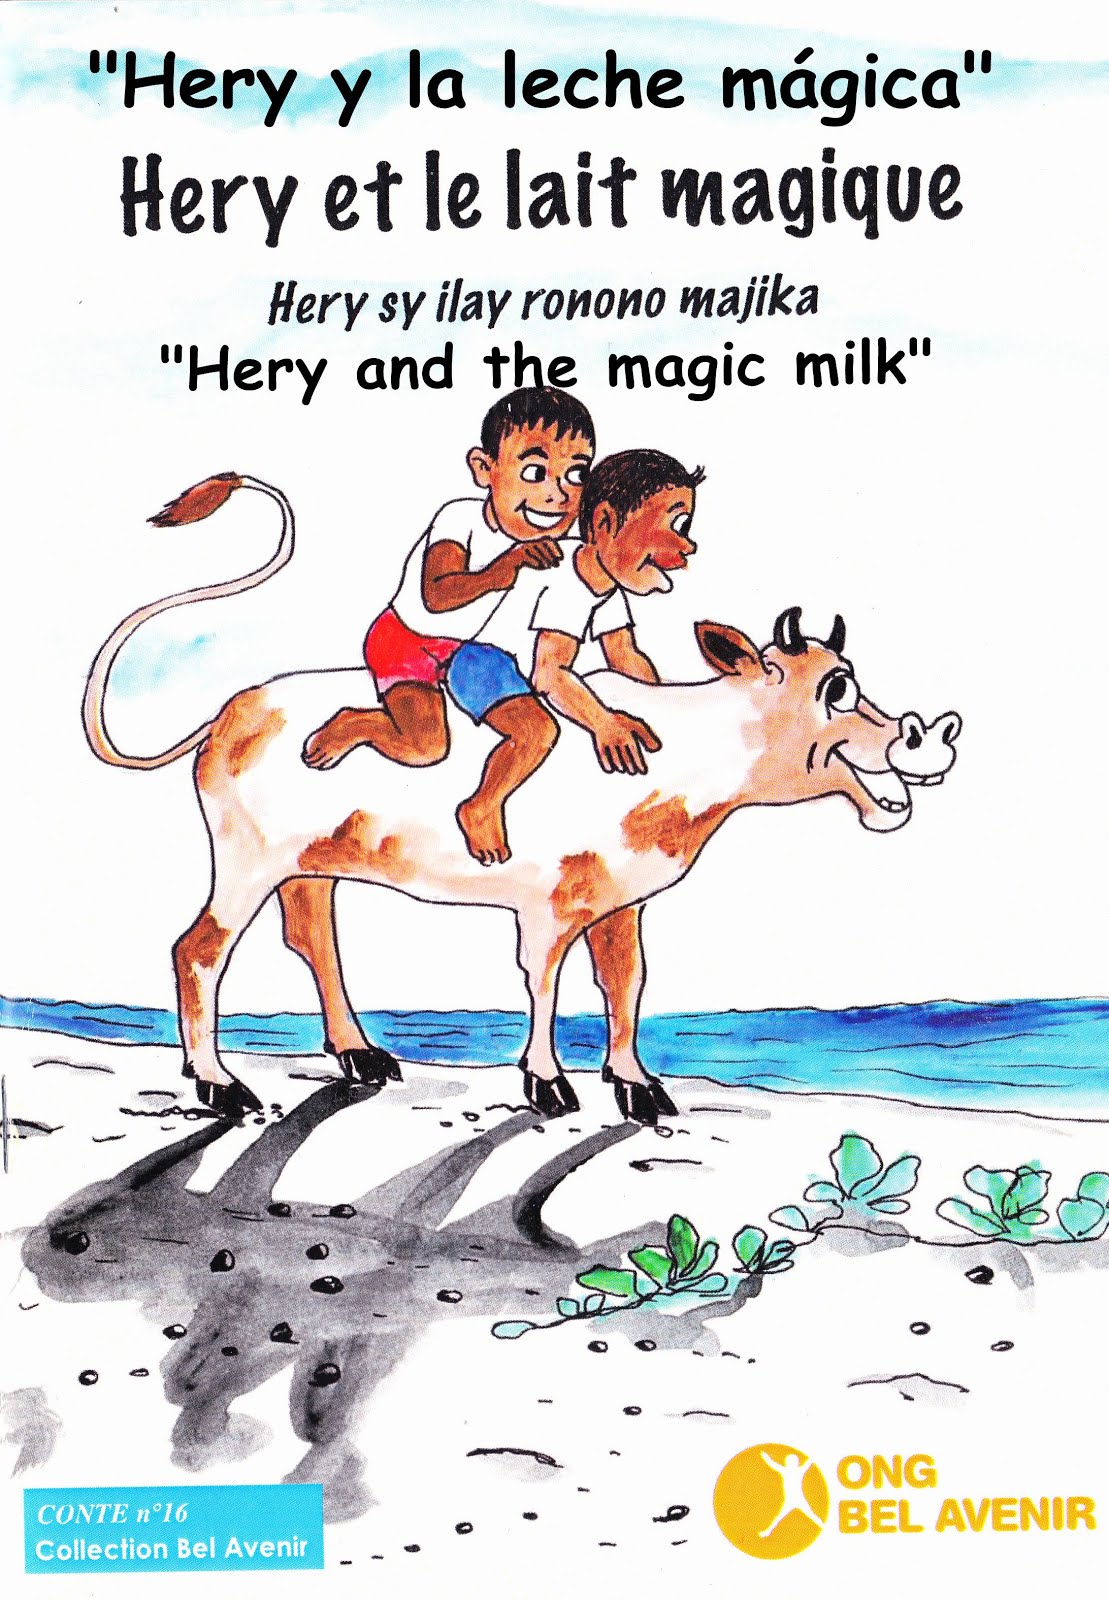 Hery y la leche mágica. Madagascar